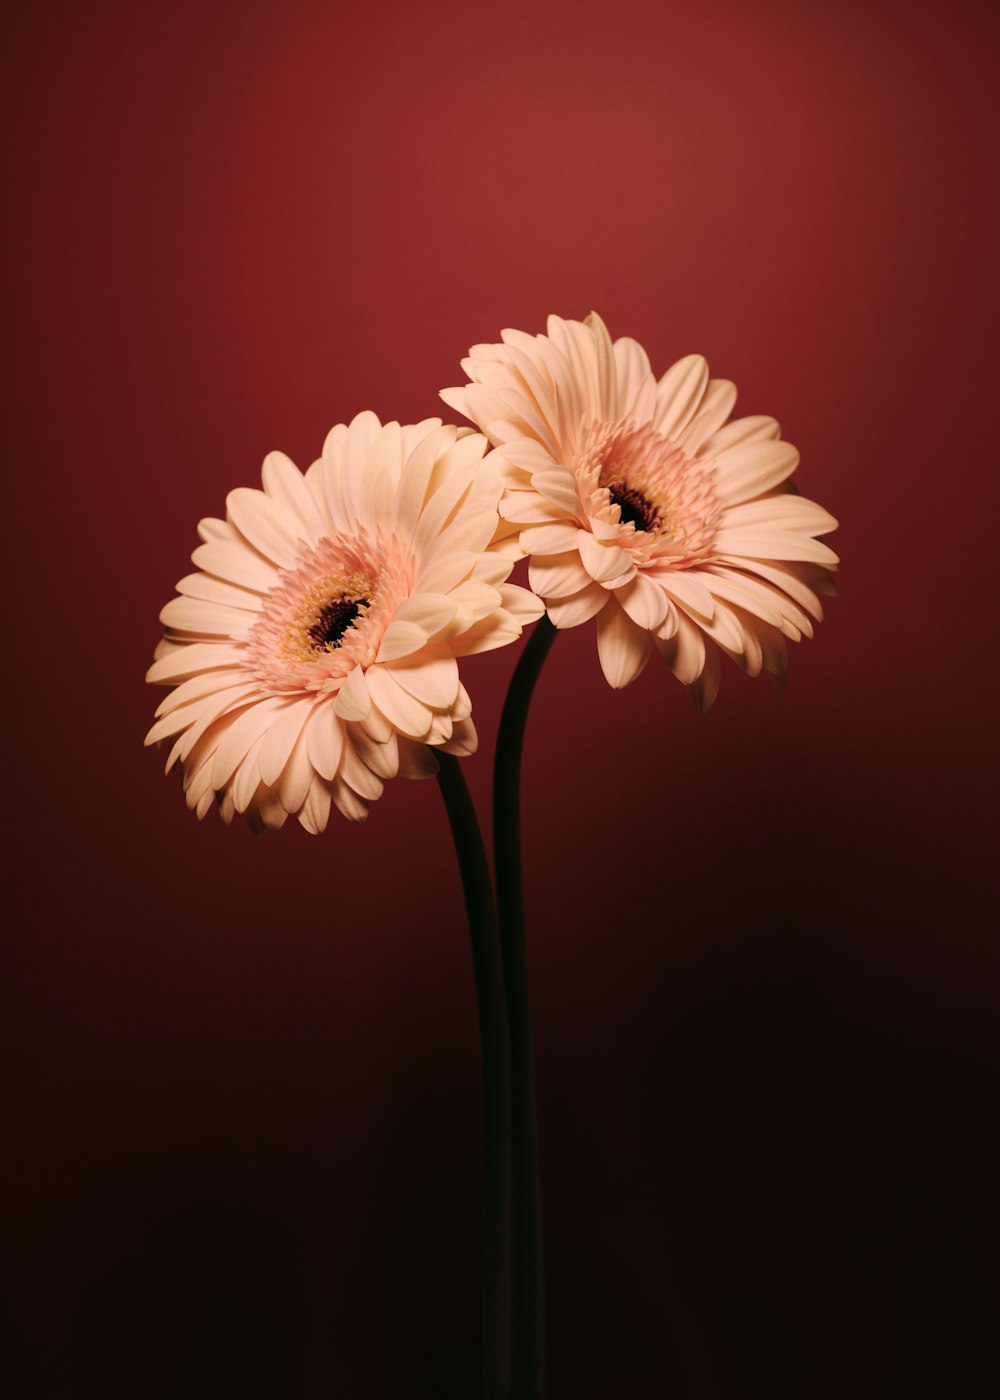 fleur rose et blanche en gros plan photographie